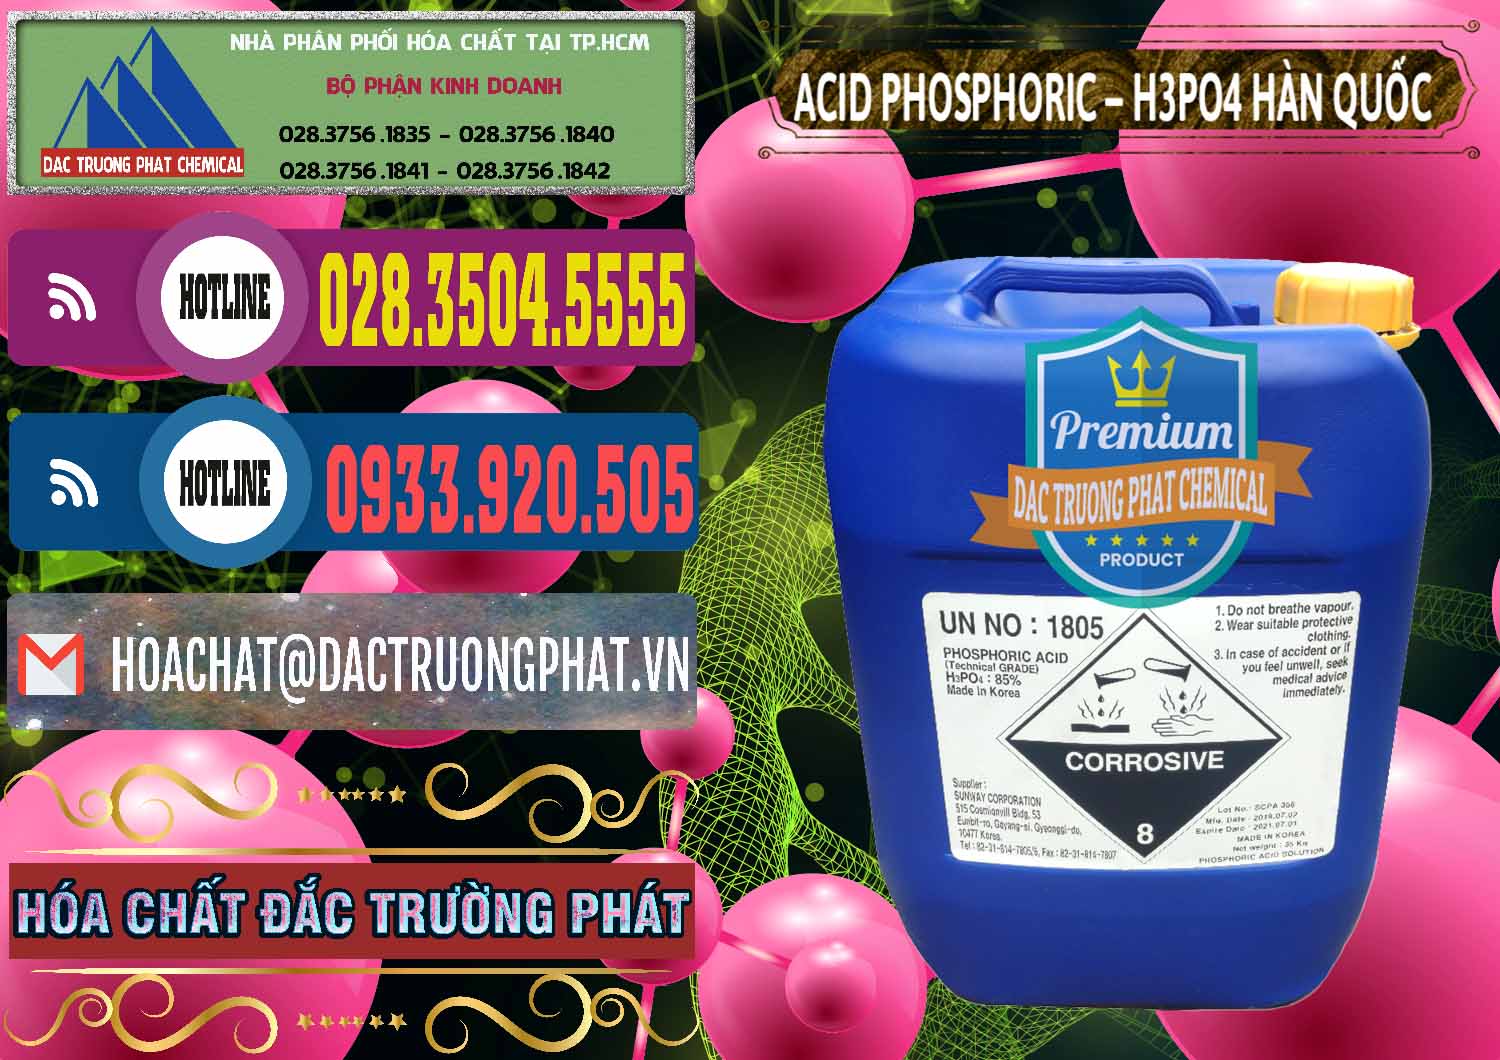 Nhà nhập khẩu và bán Acid Phosphoric – H3PO4 85% Can Xanh Hàn Quốc Korea - 0016 - Công ty chuyên phân phối & nhập khẩu hóa chất tại TP.HCM - muabanhoachat.com.vn